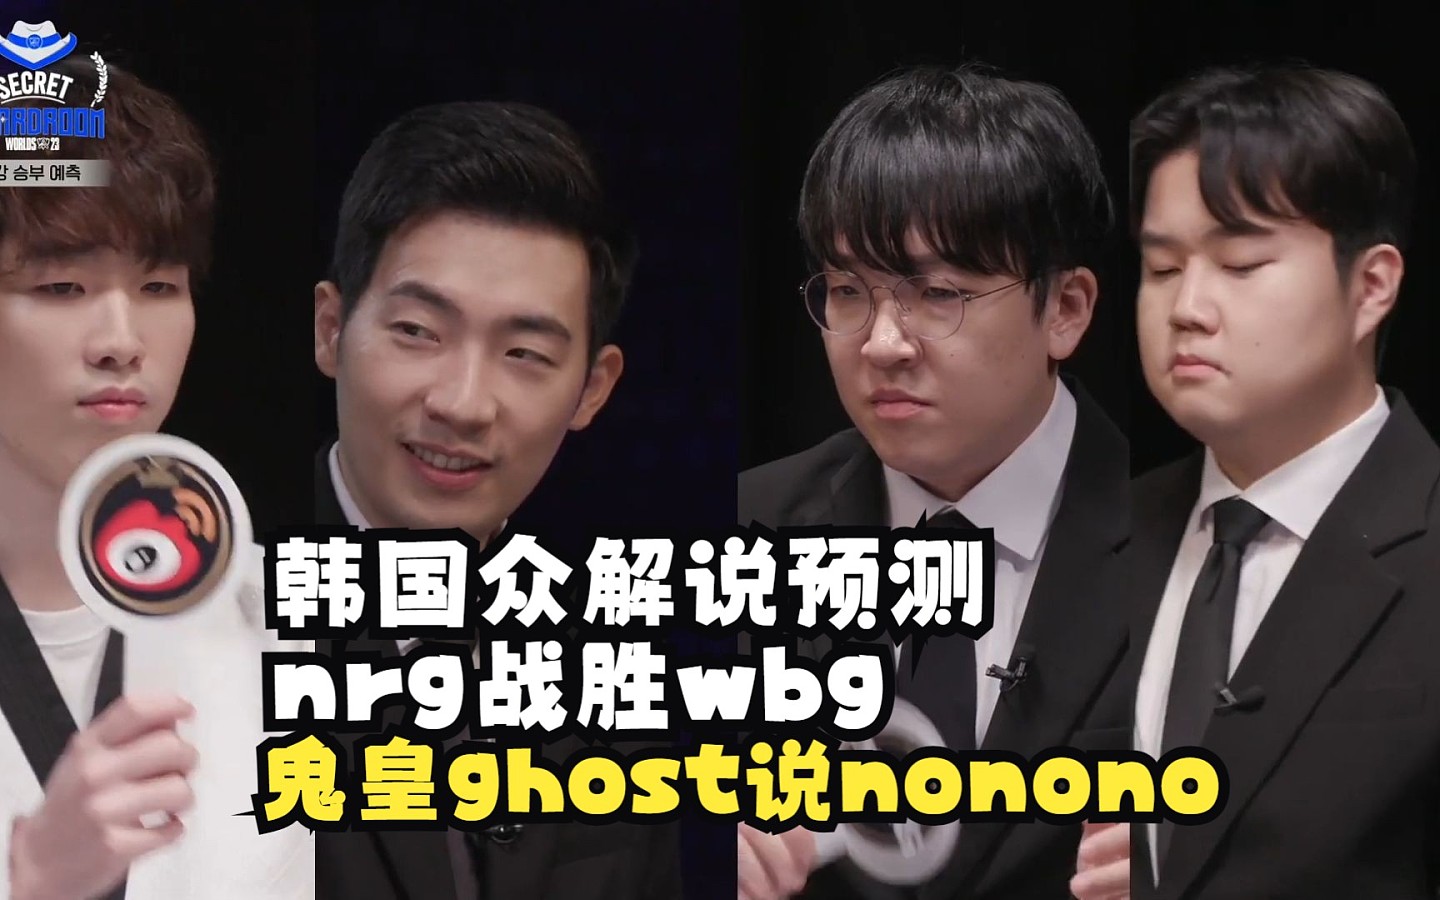 韩国众解说预测NRG战胜WBG，鬼皇Ghost轻蔑一笑表示WBG铁赢? - 1